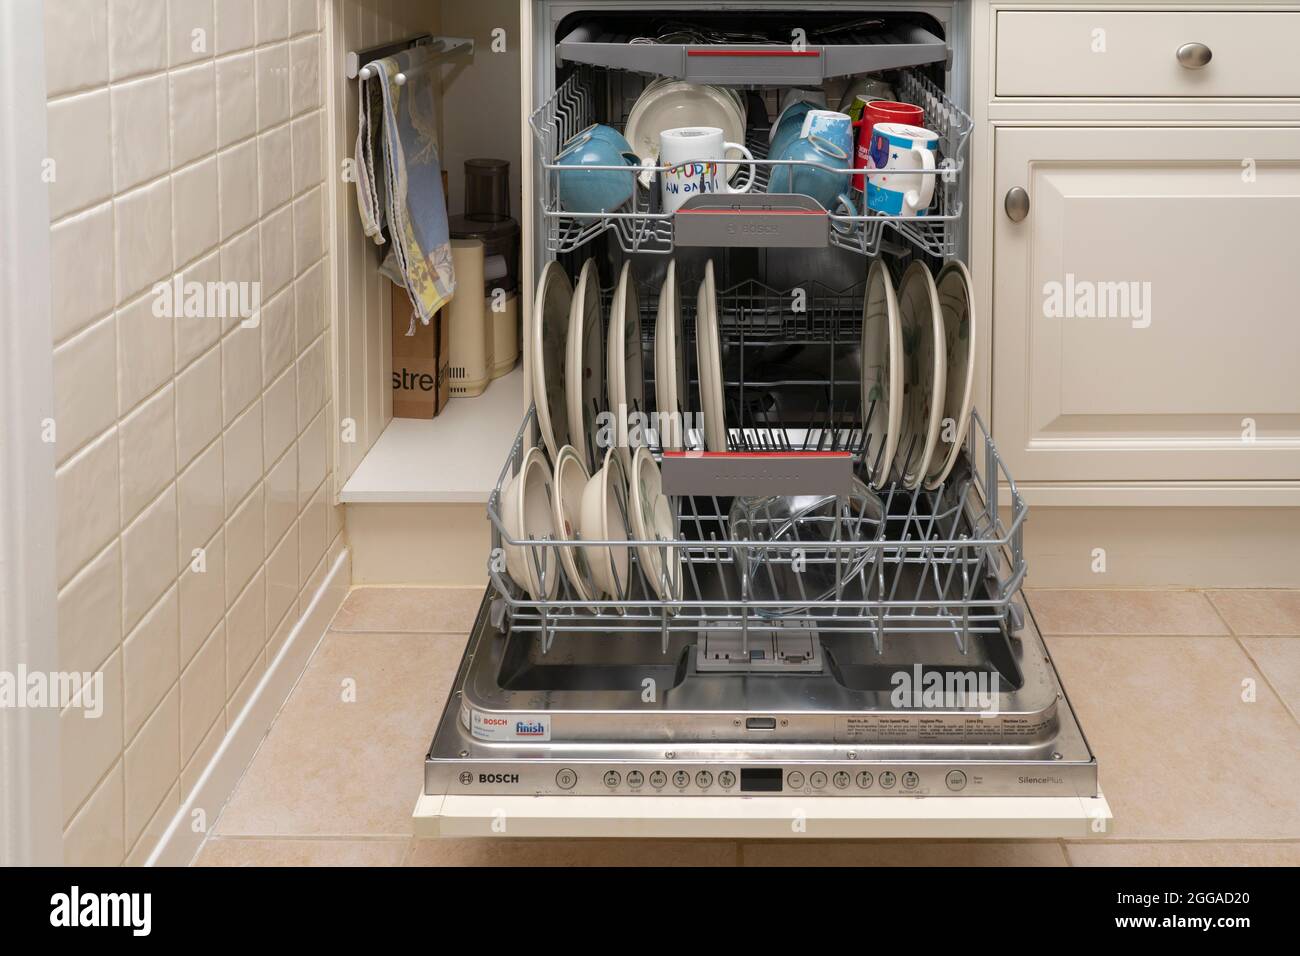 Un lave-vaisselle équipé plein de vaisselle propre lavée, des tasses et de la vaisselle dans une cuisine domestique à la maison Royaume-Uni, Grande-Bretagne Banque D'Images